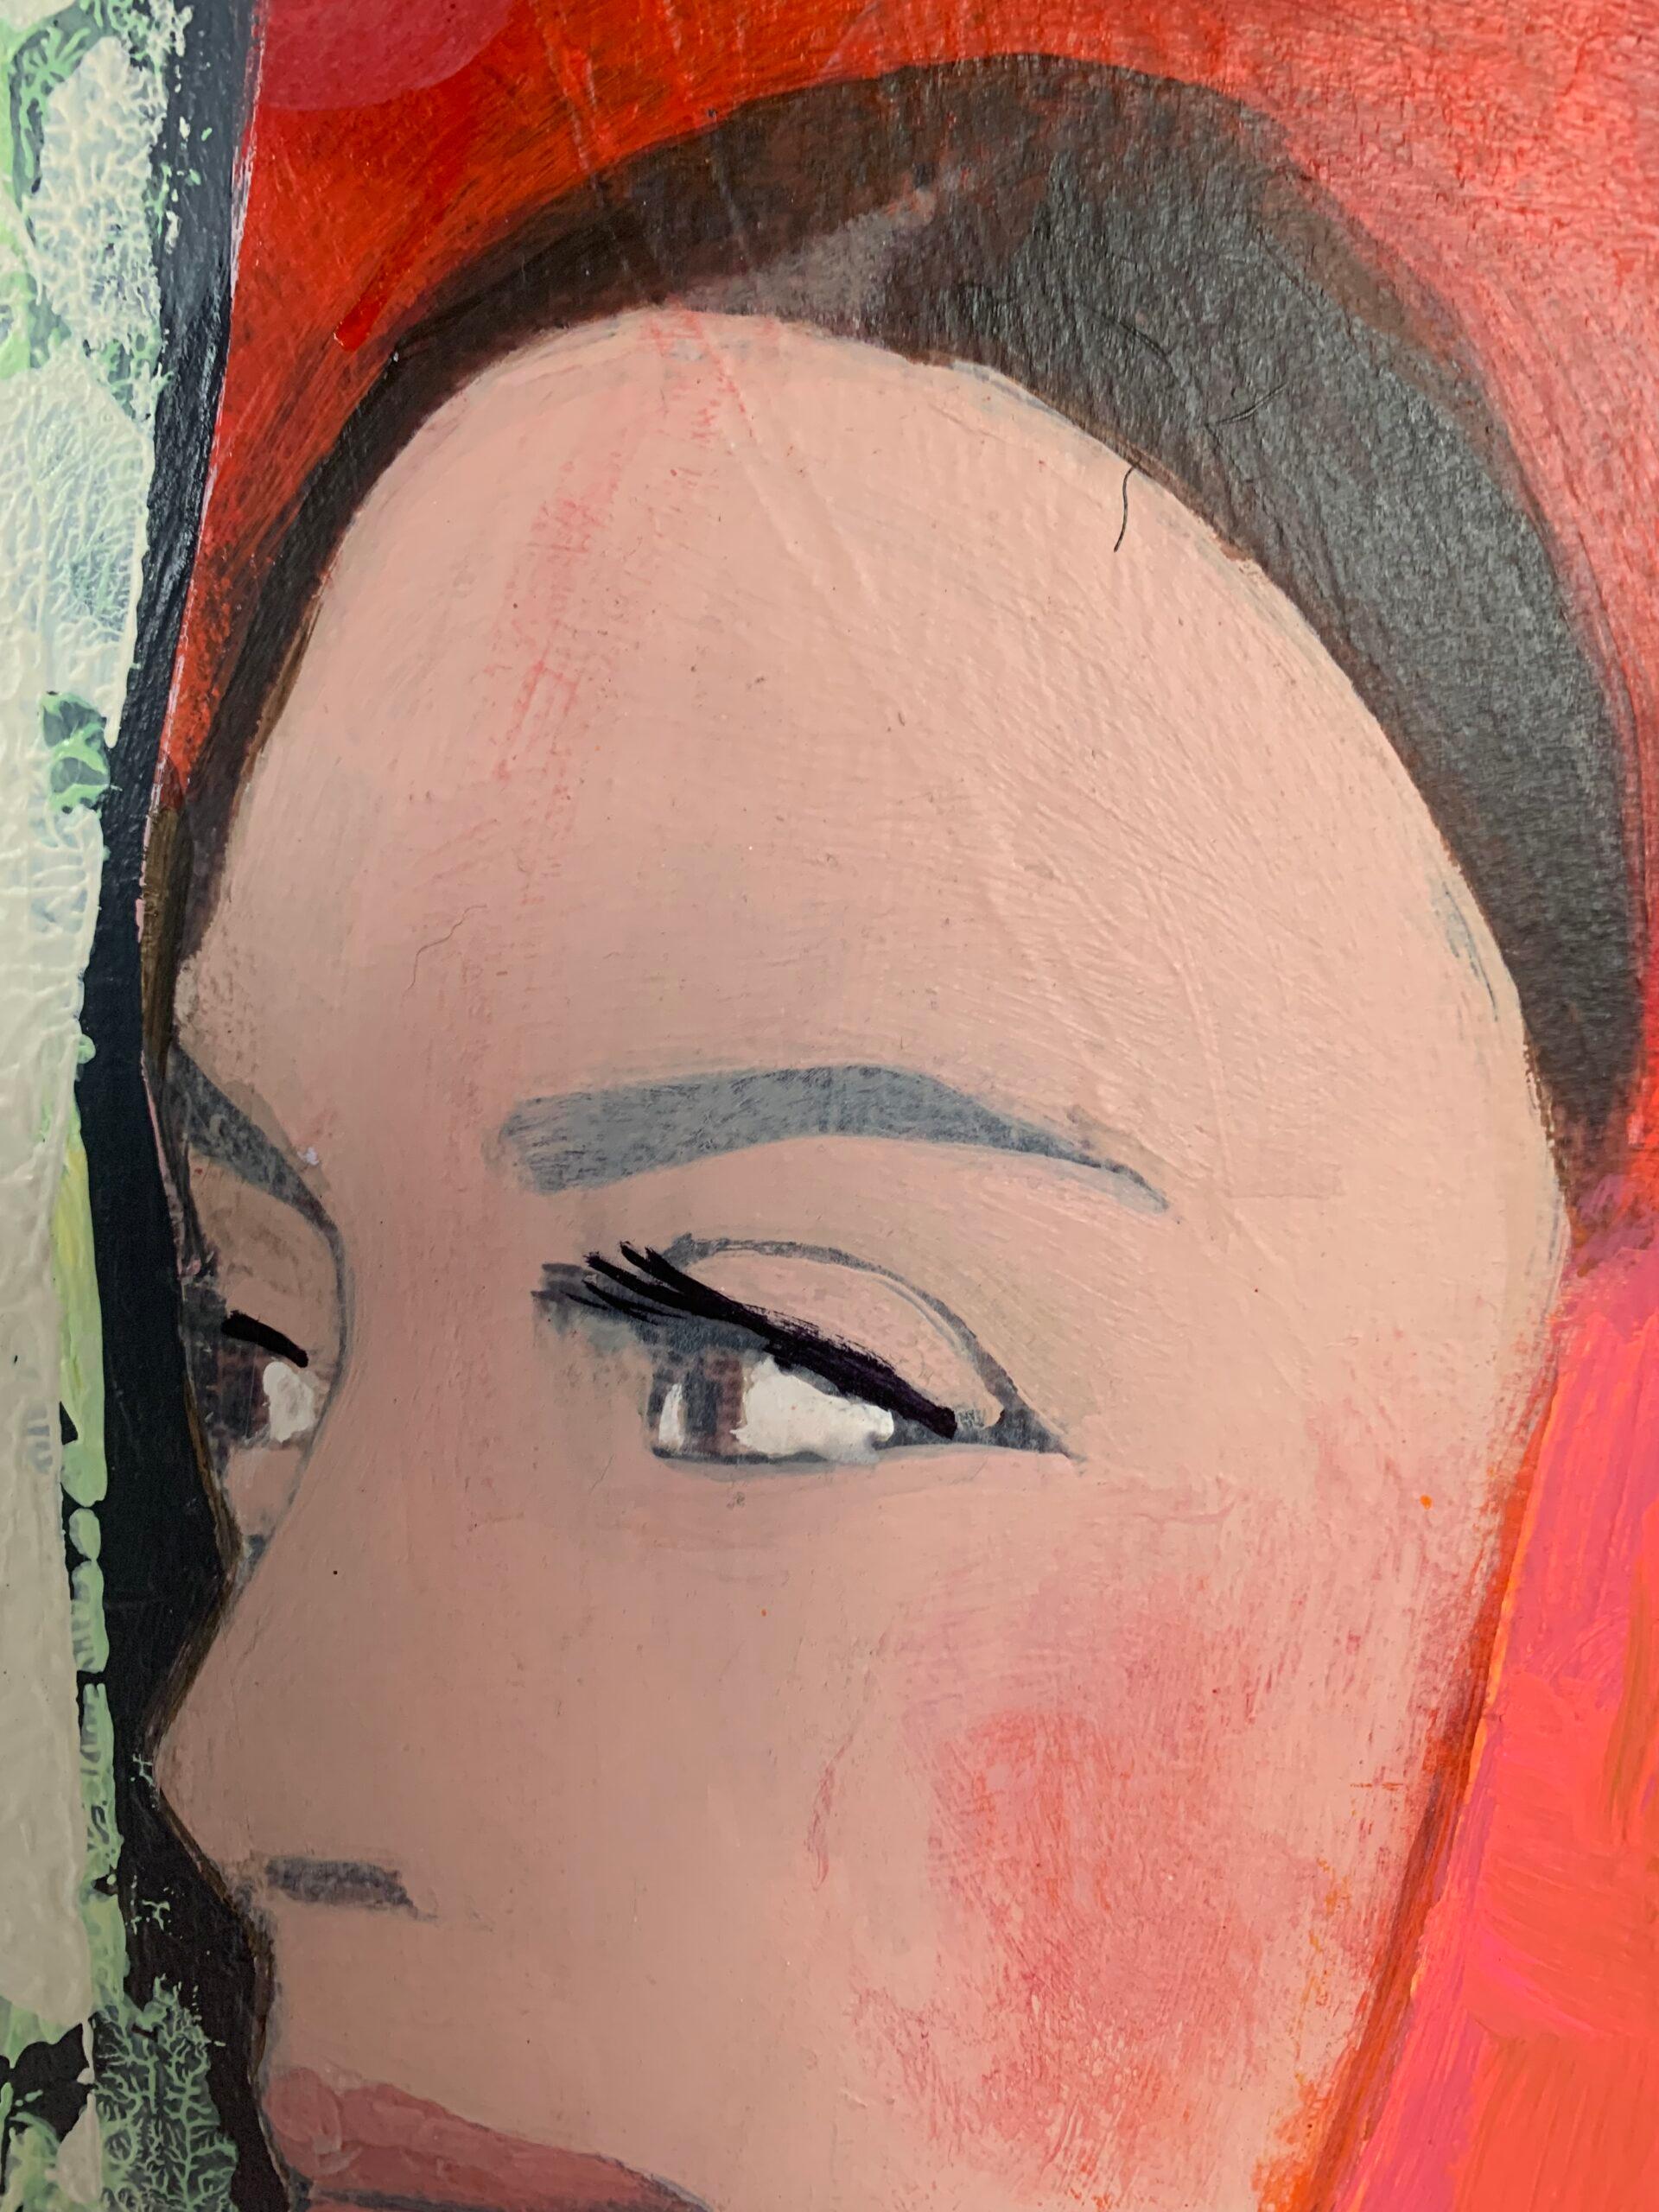 Porteuse de pot avec châle rose - Couleur vive Portrait, Femme, Texture, Visage - Contemporain Painting par Nicolle Menegaldo